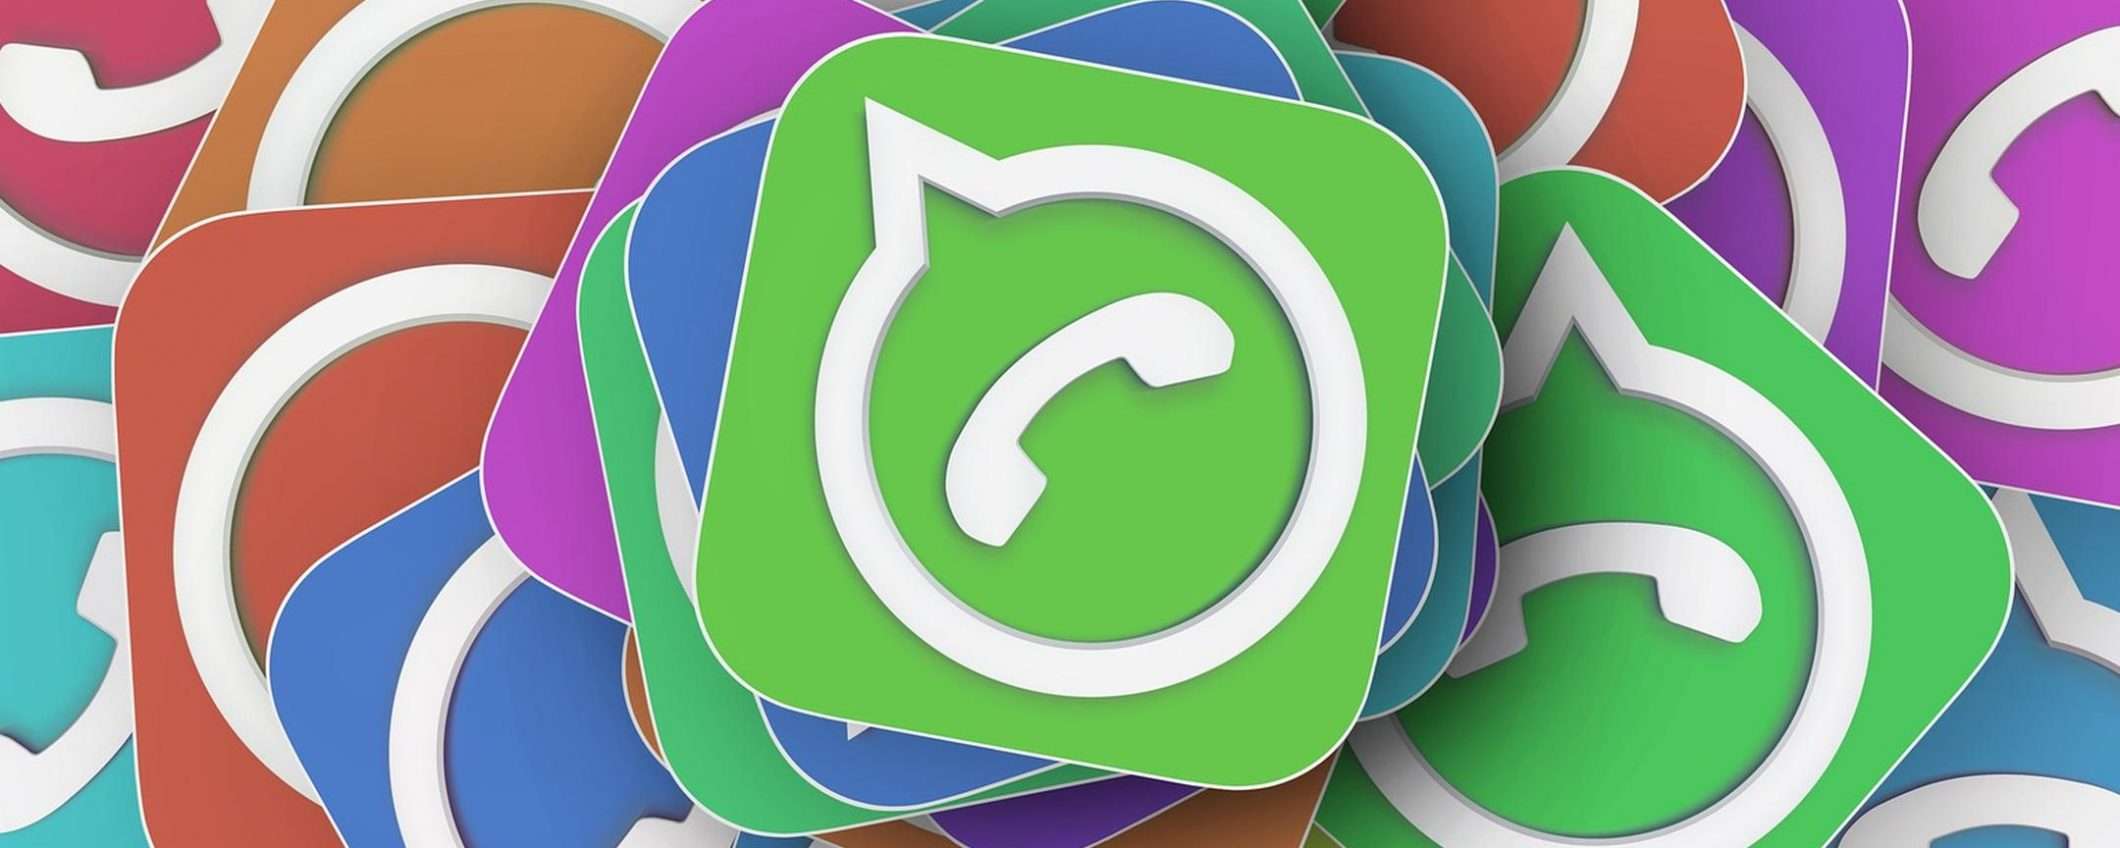 WhatsApp: funzionalità complete dopo il 15 maggio